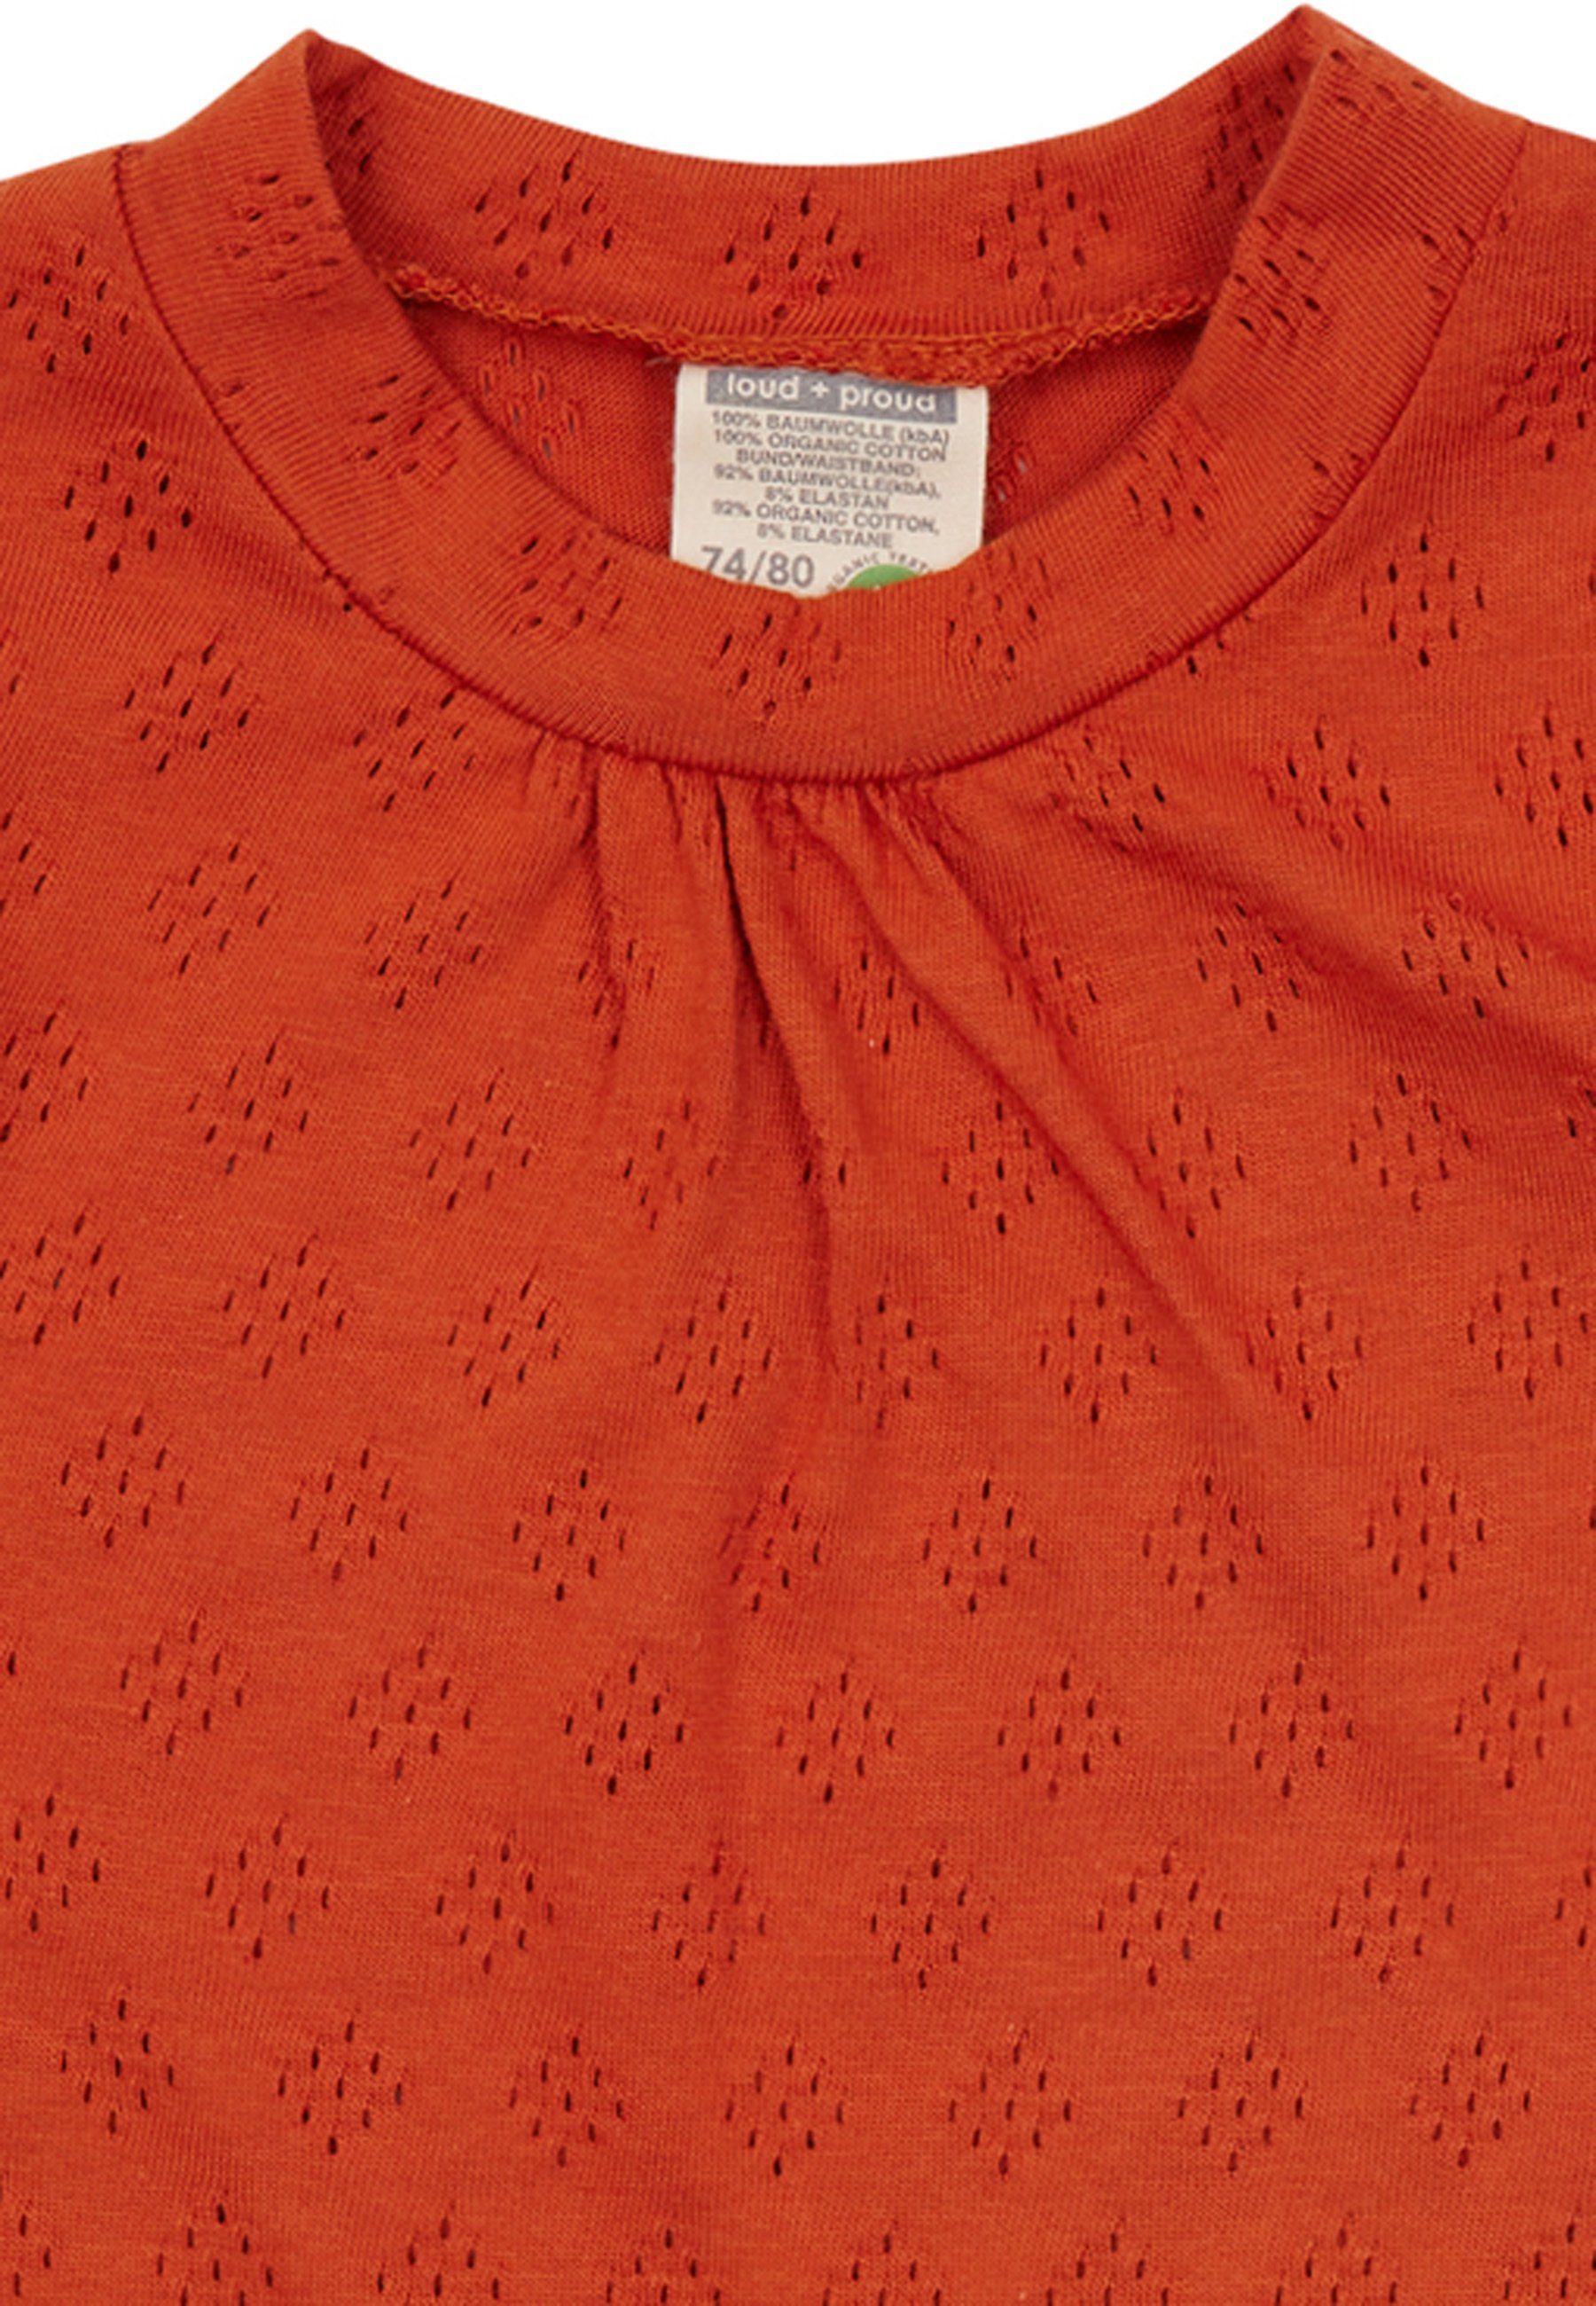 loud GOTS Bio-Baumwolle + proud Jacquard-Strickmuster A-Linien-Kleid rot zertifizierte